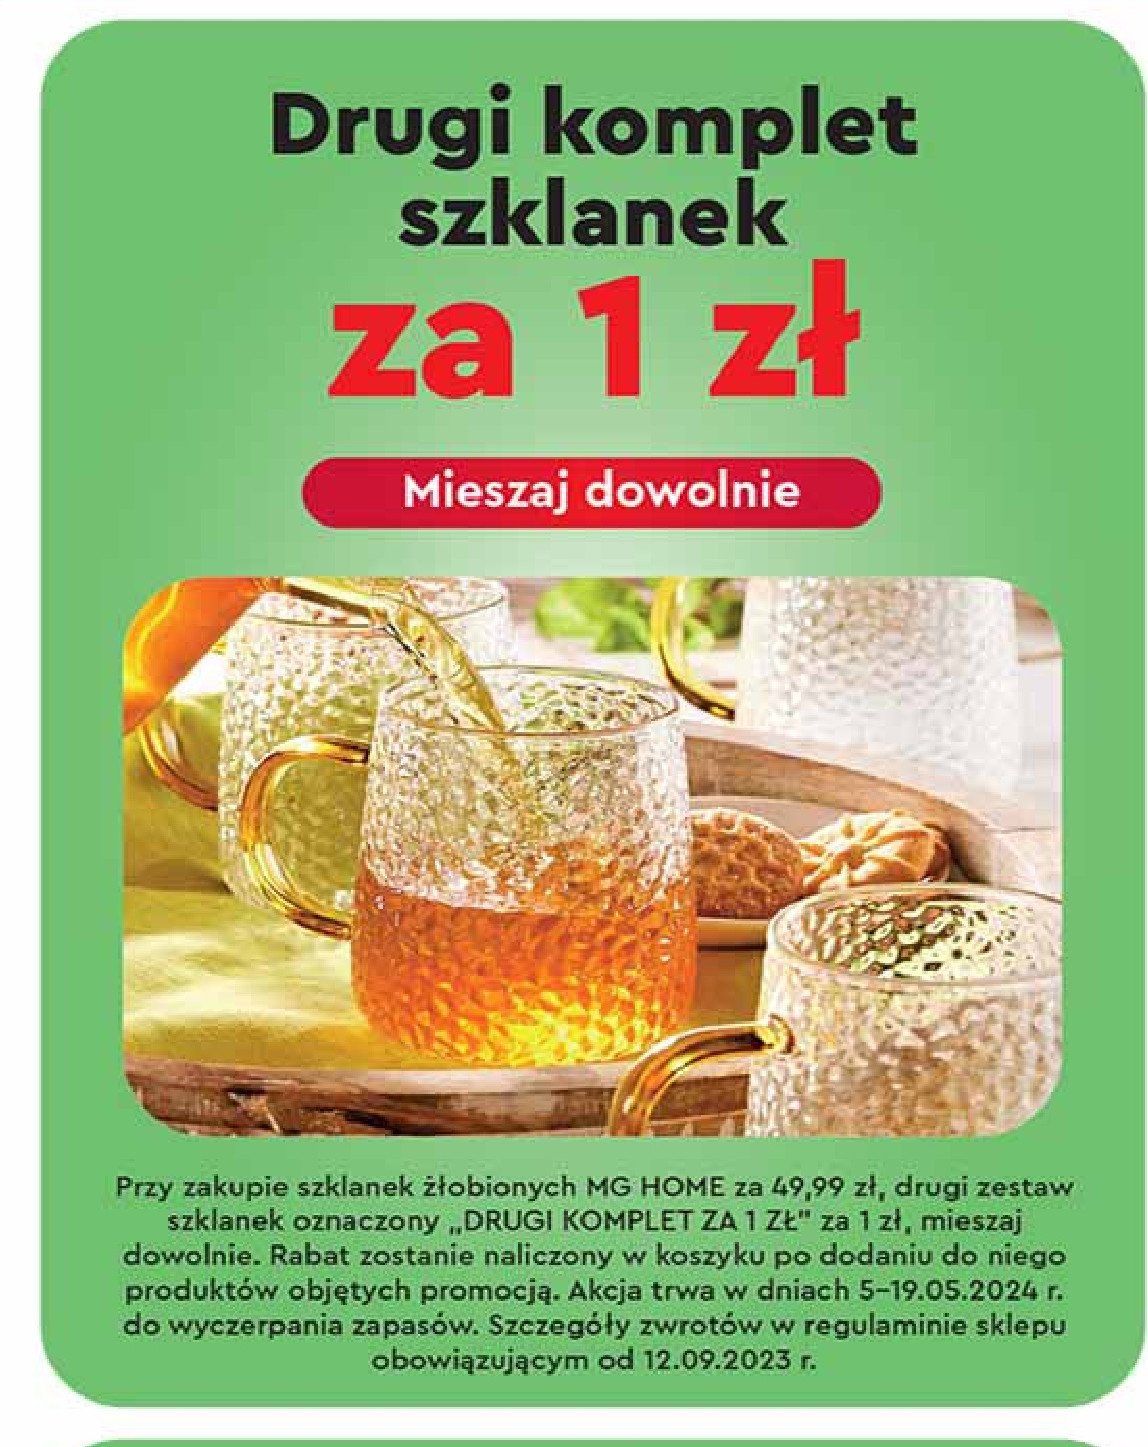 Szklanki żłobione Mg home promocja w Biedronka